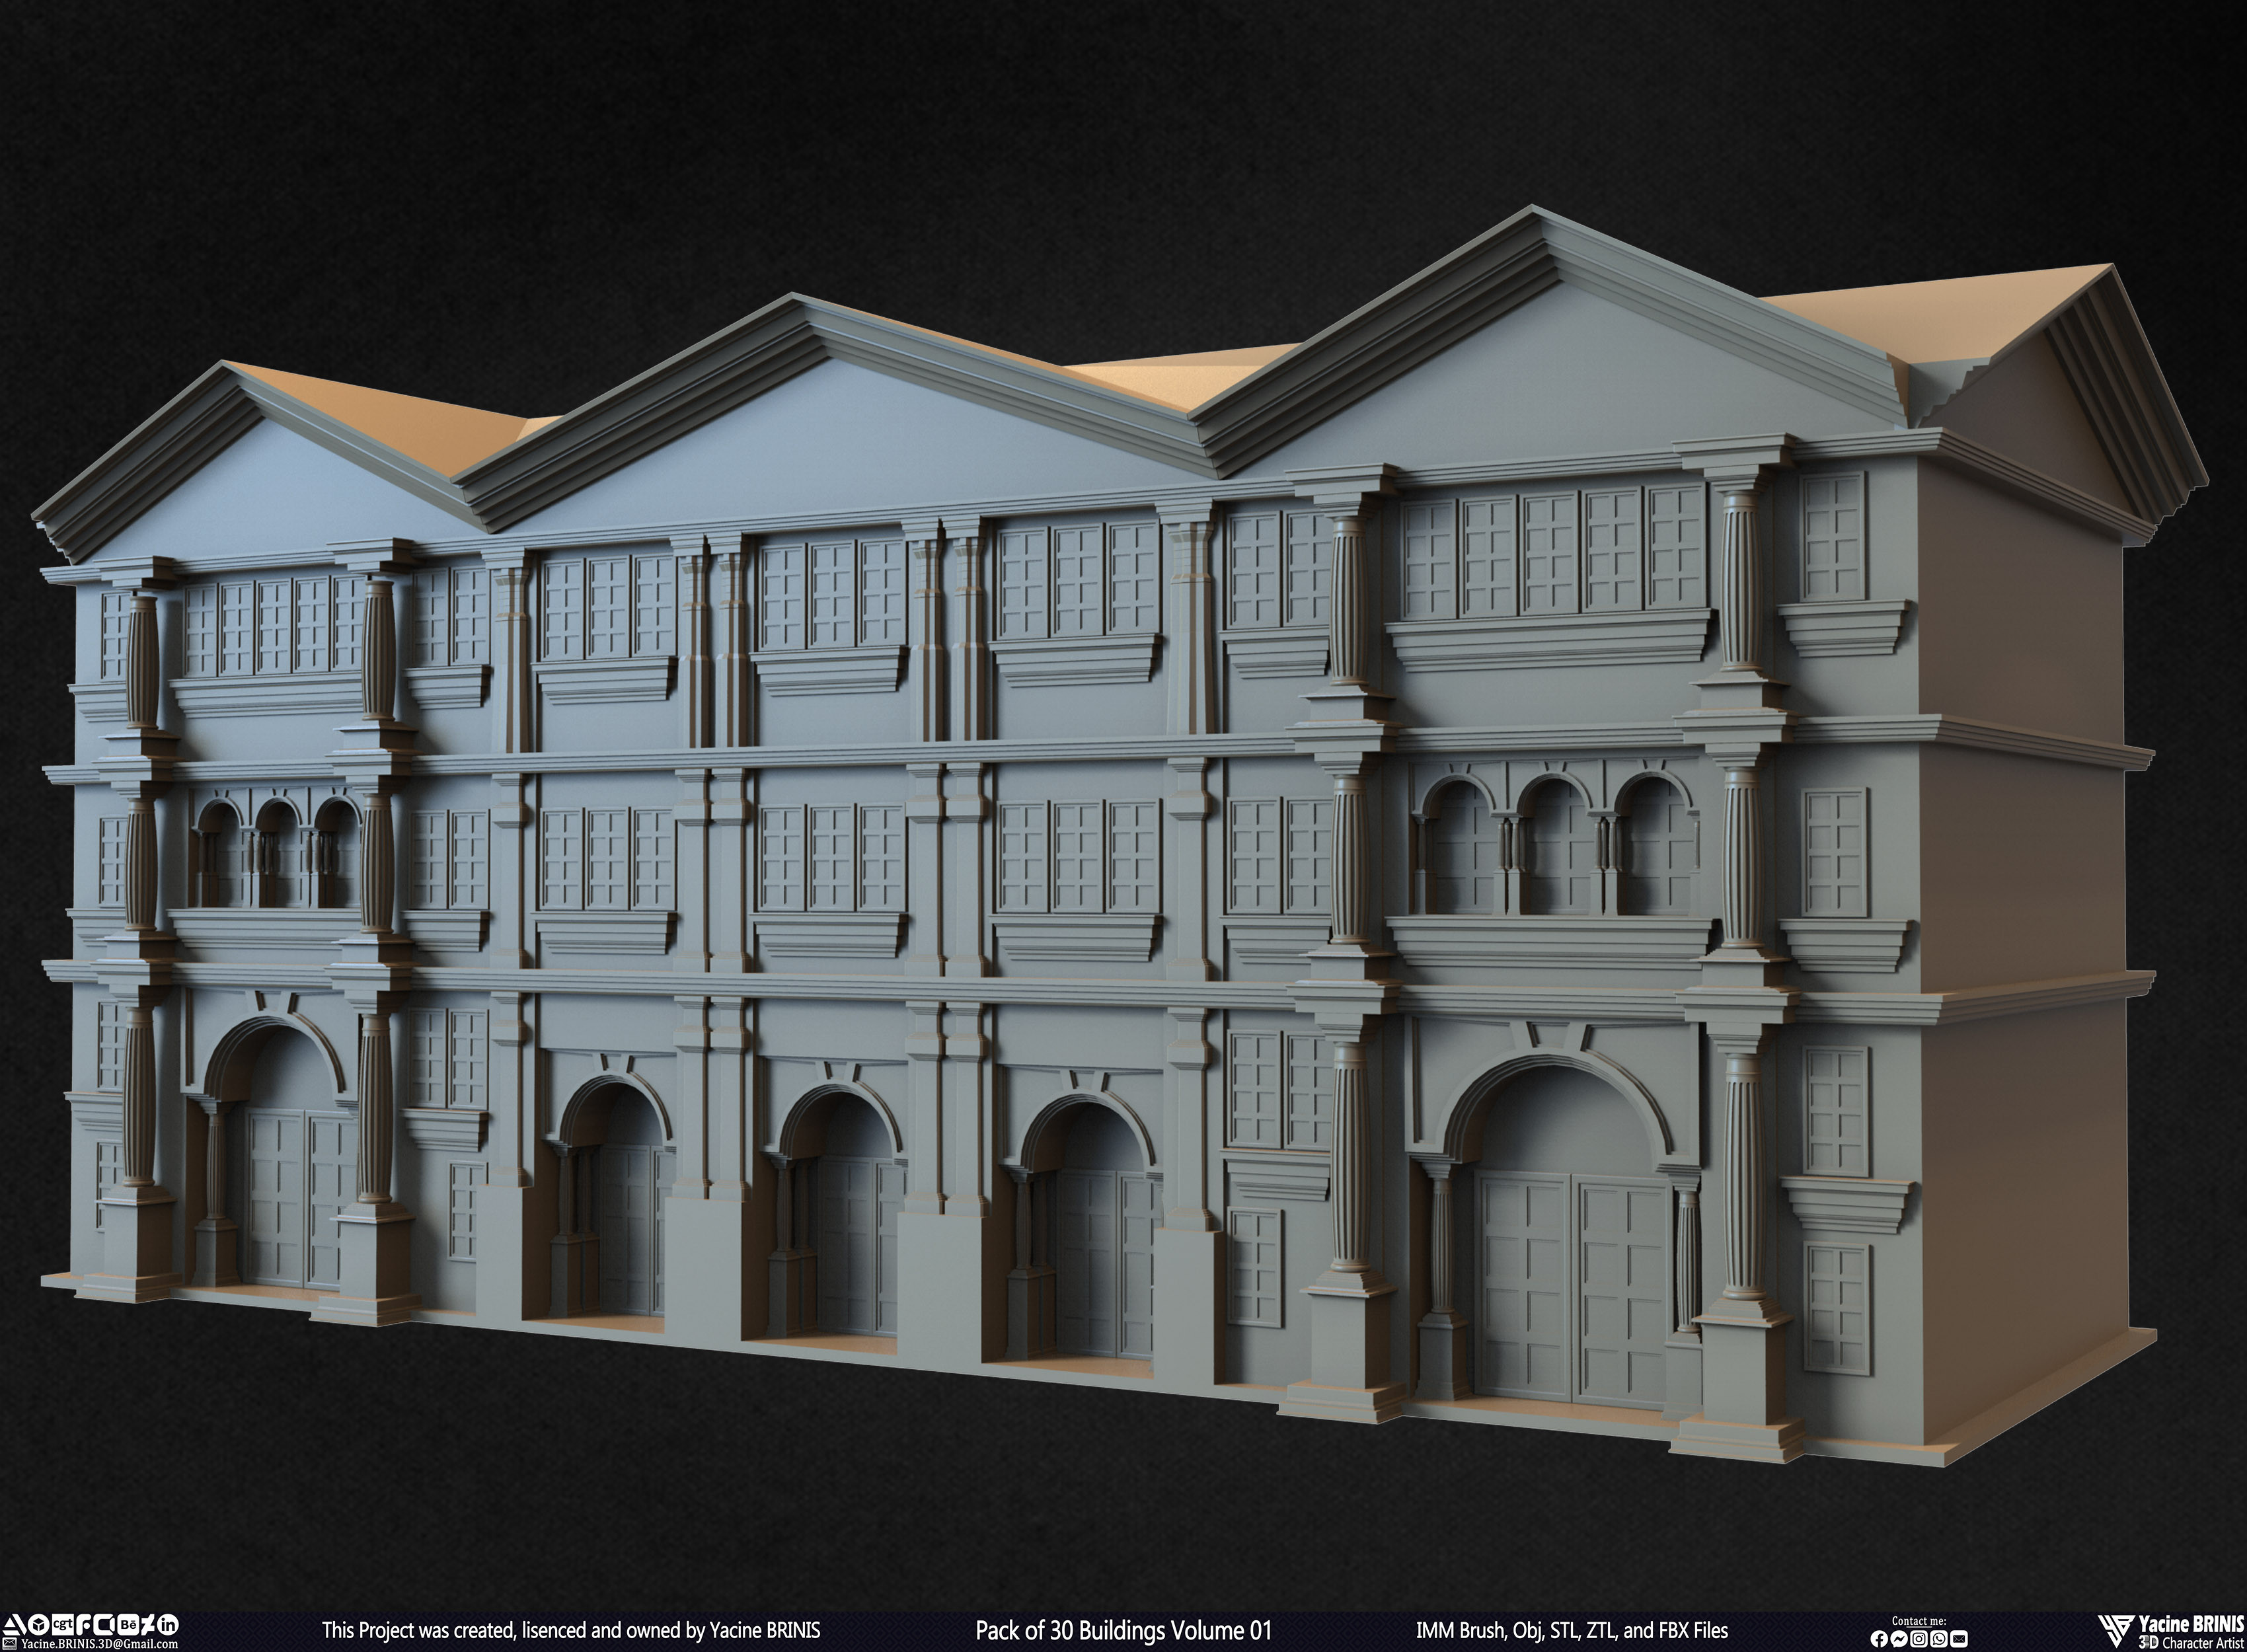 Pack of 30 Buildings Vol 01 Sculpted by Yacine BRINIS Set 027